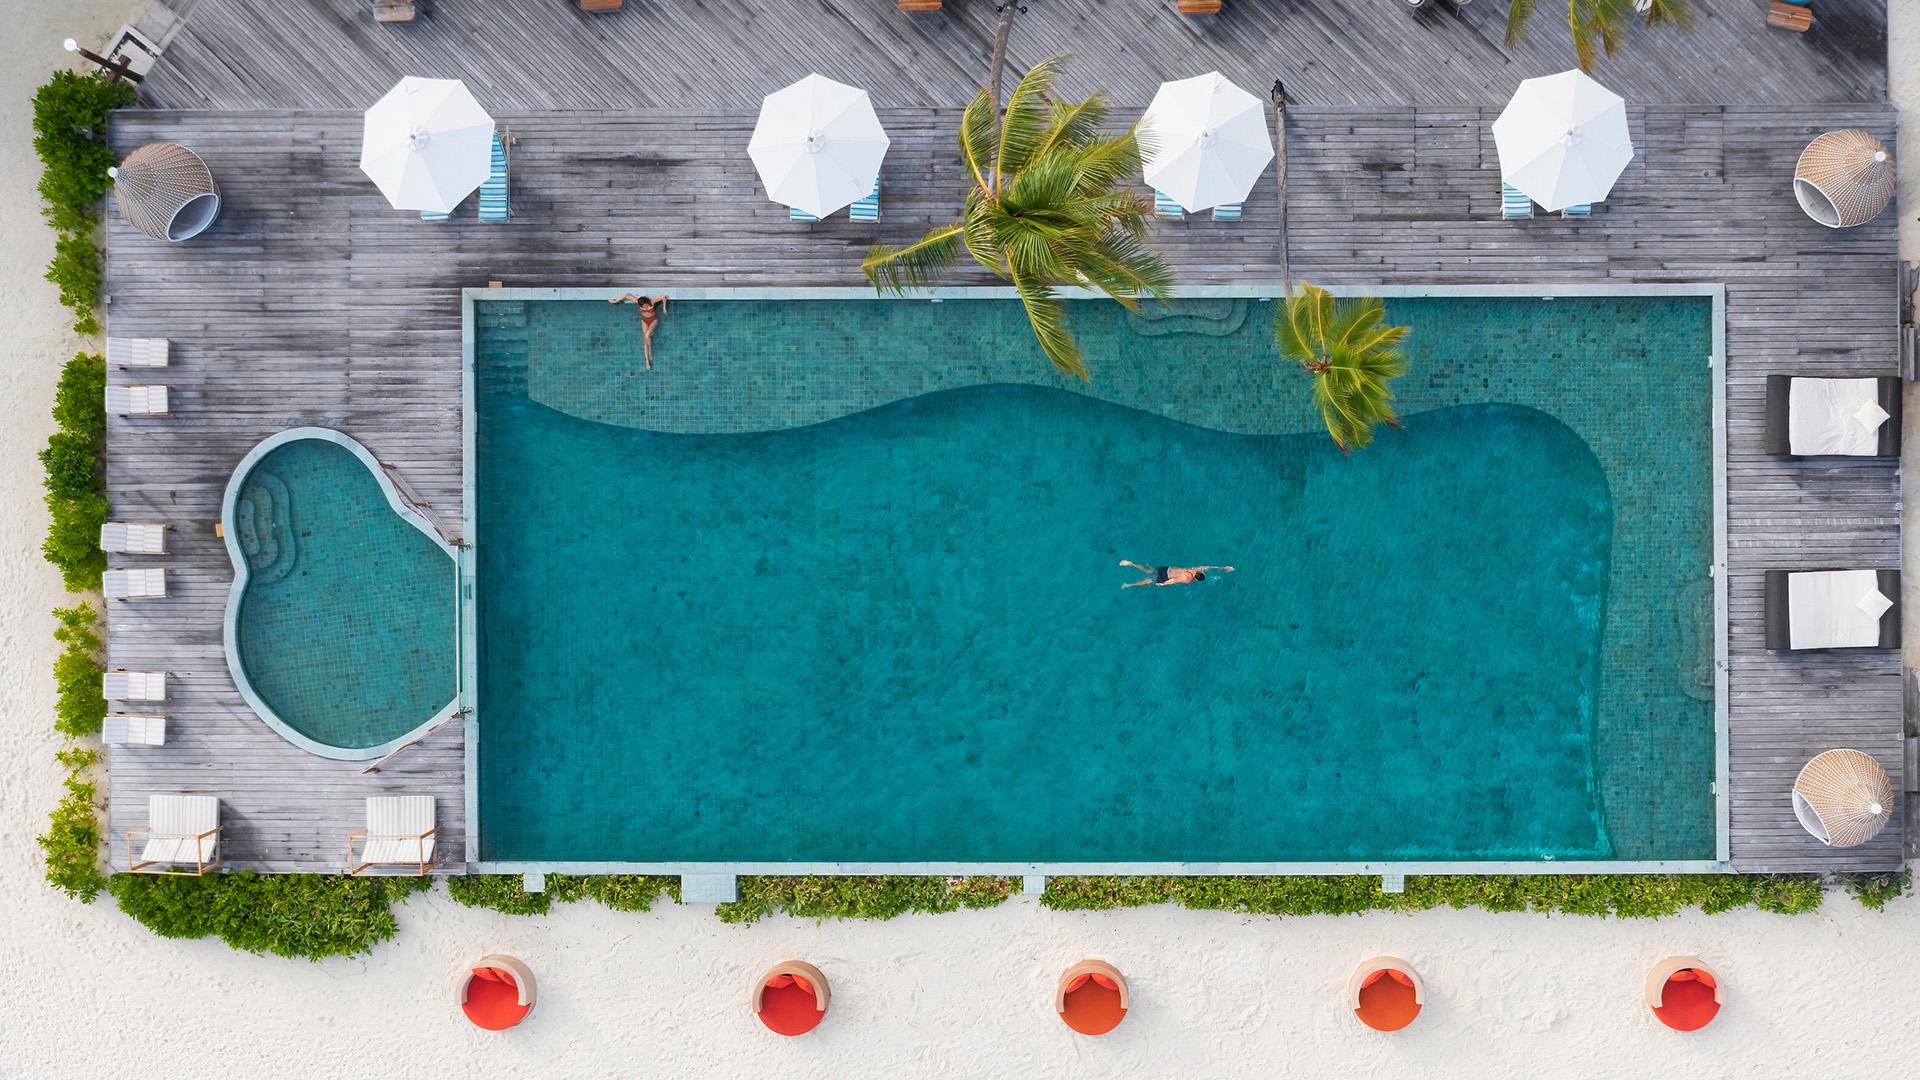 Kuredhi Pool at Angsana Velavaru Resort, Maldives